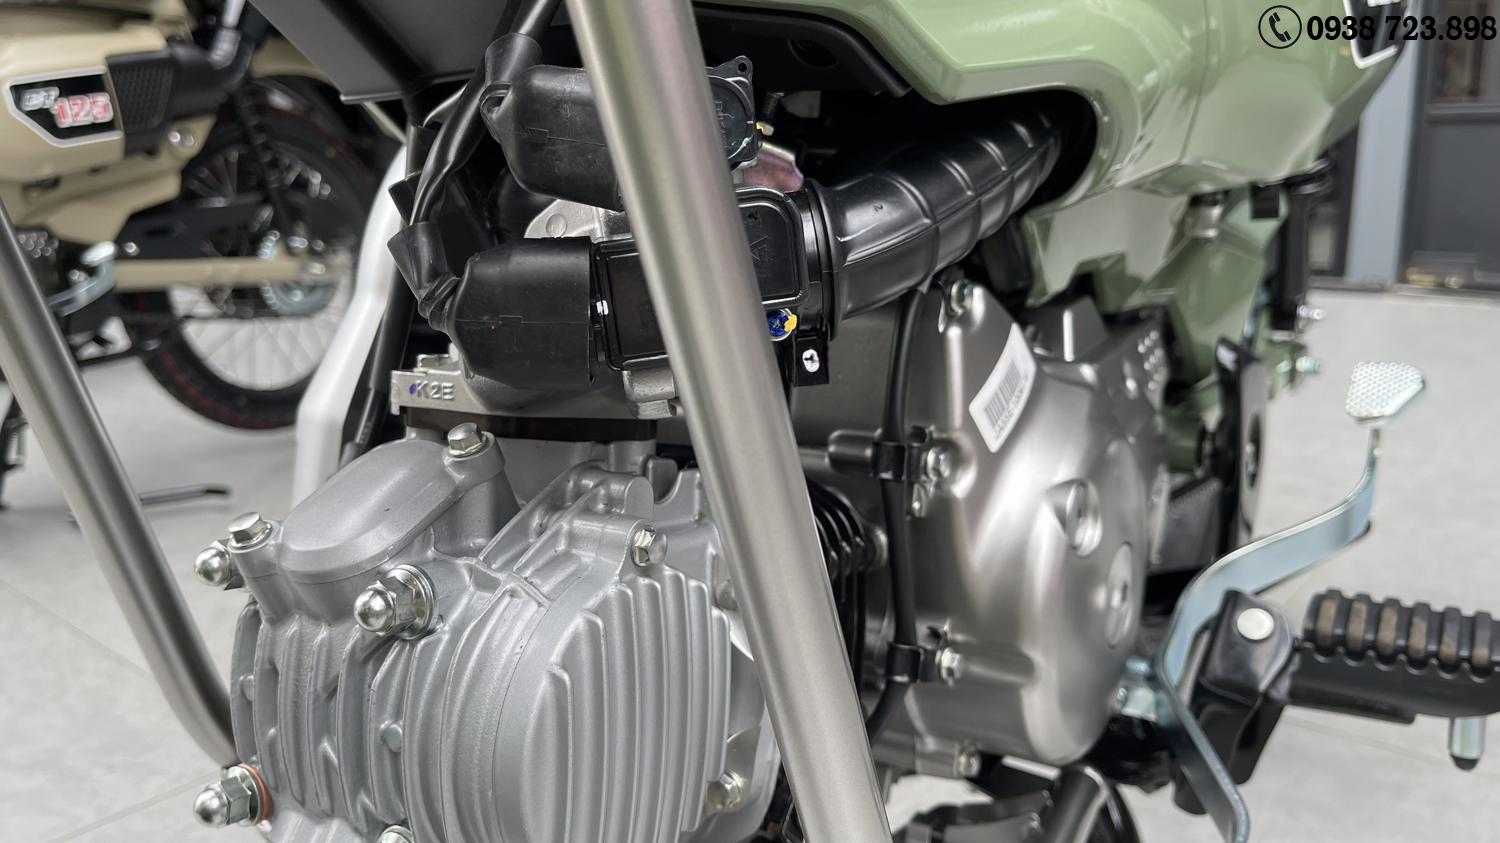 Honda CT125 2023 ABS nhập khẩu chính hãng có hãng sẵn